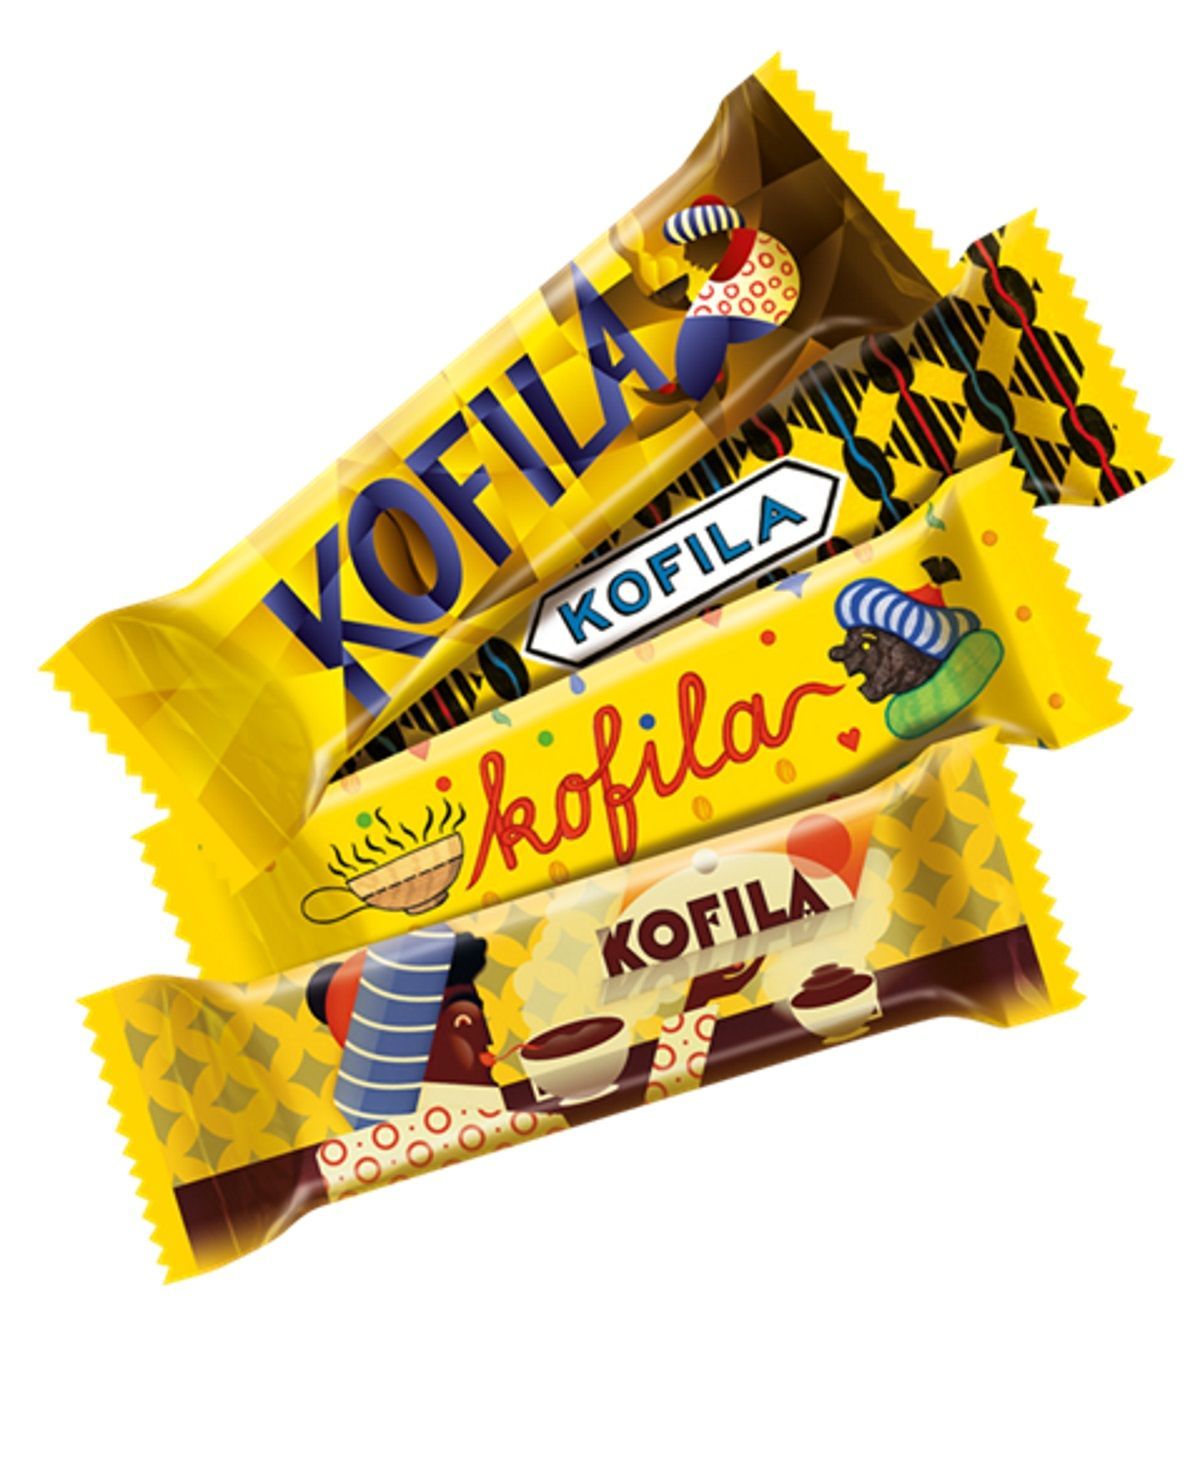 Kofila Nestlé 4 tyčinky 2017